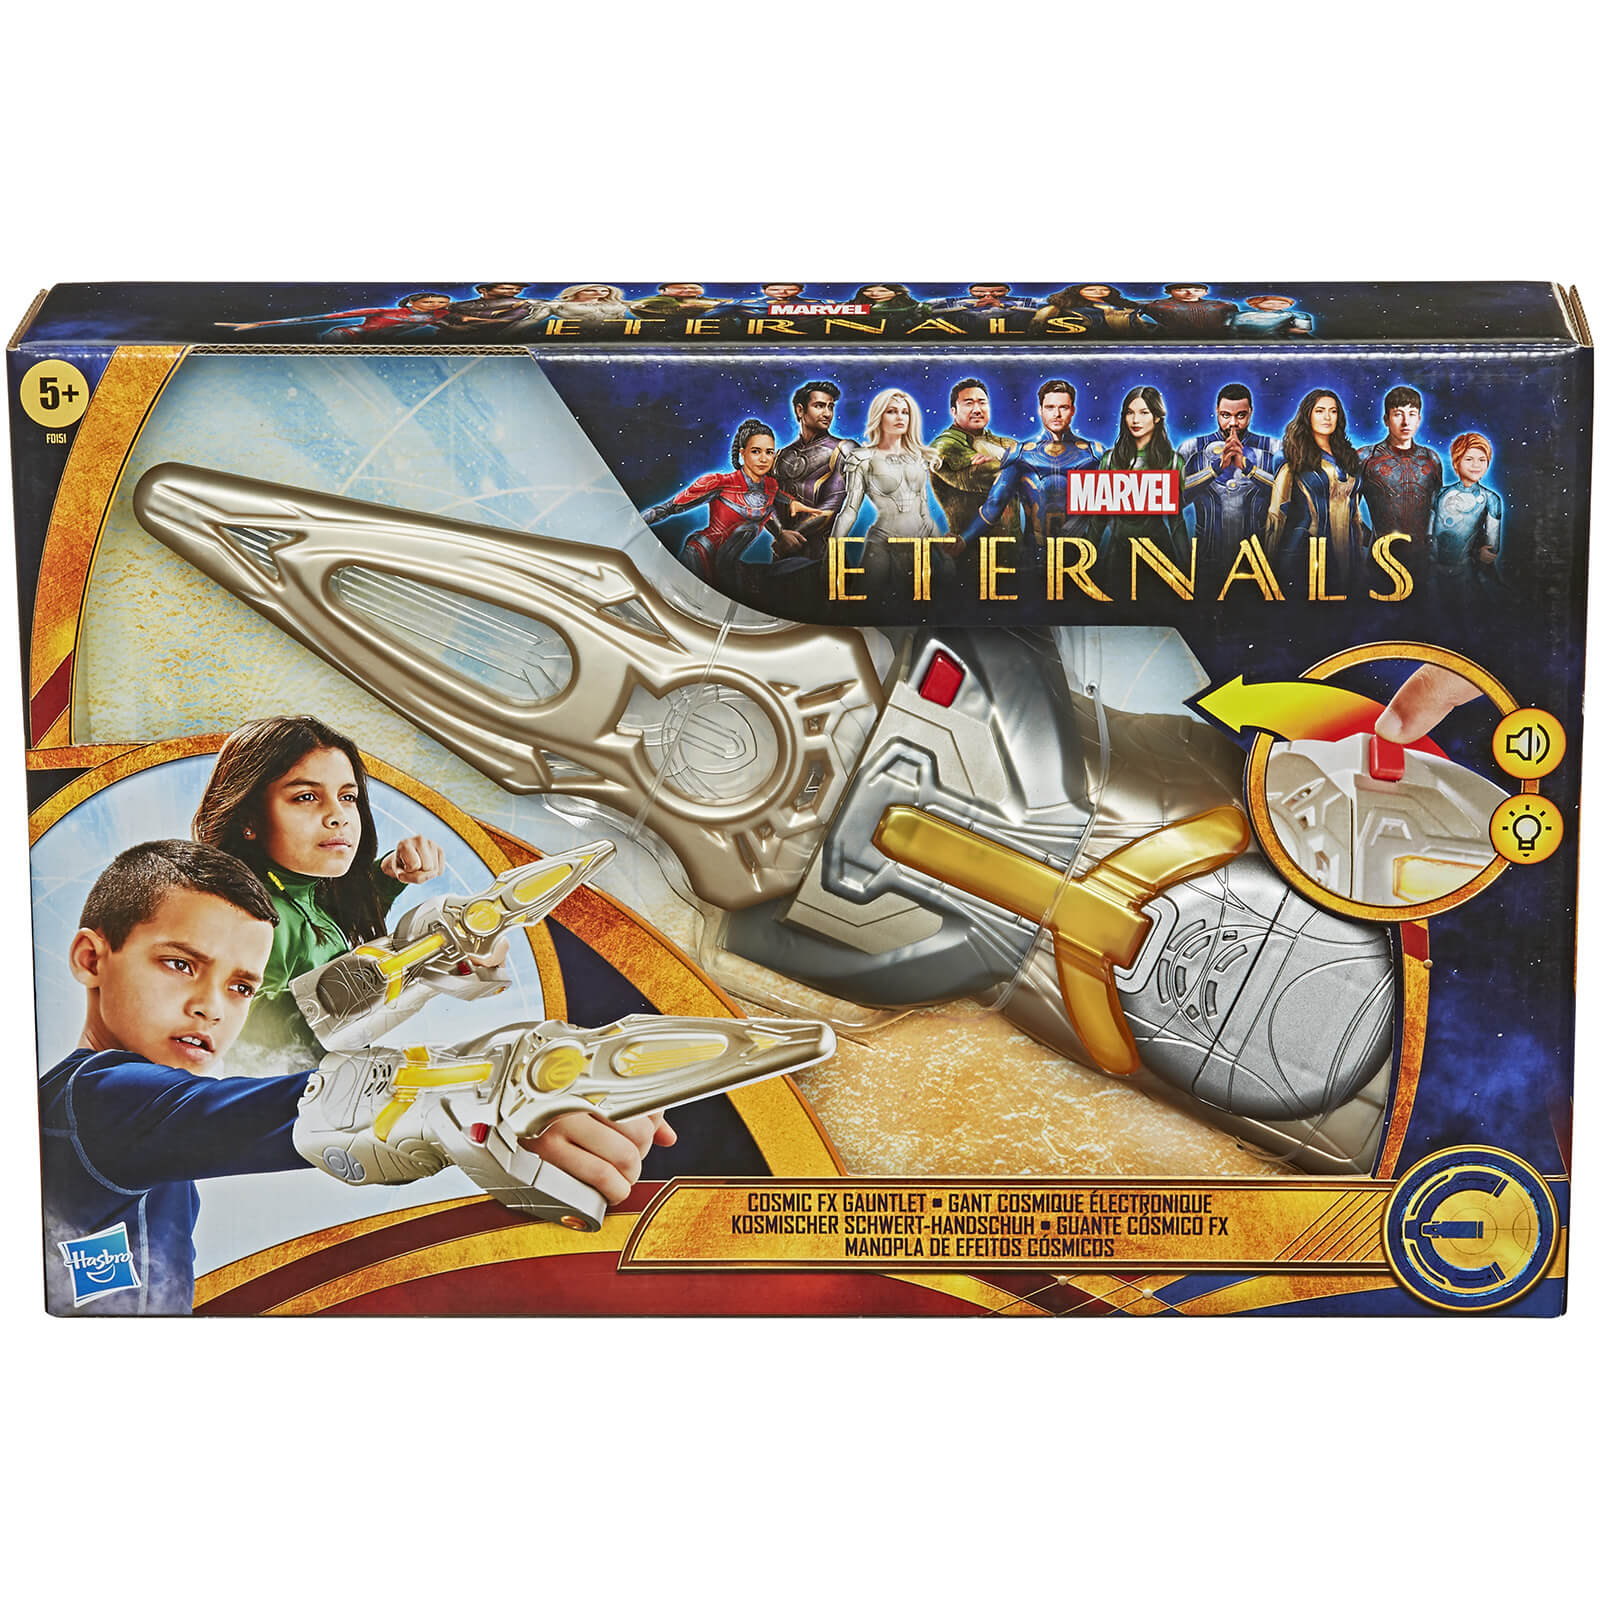 Image of Hasbro The Eternals Deluxe Cosmic Sword and Gauntlet